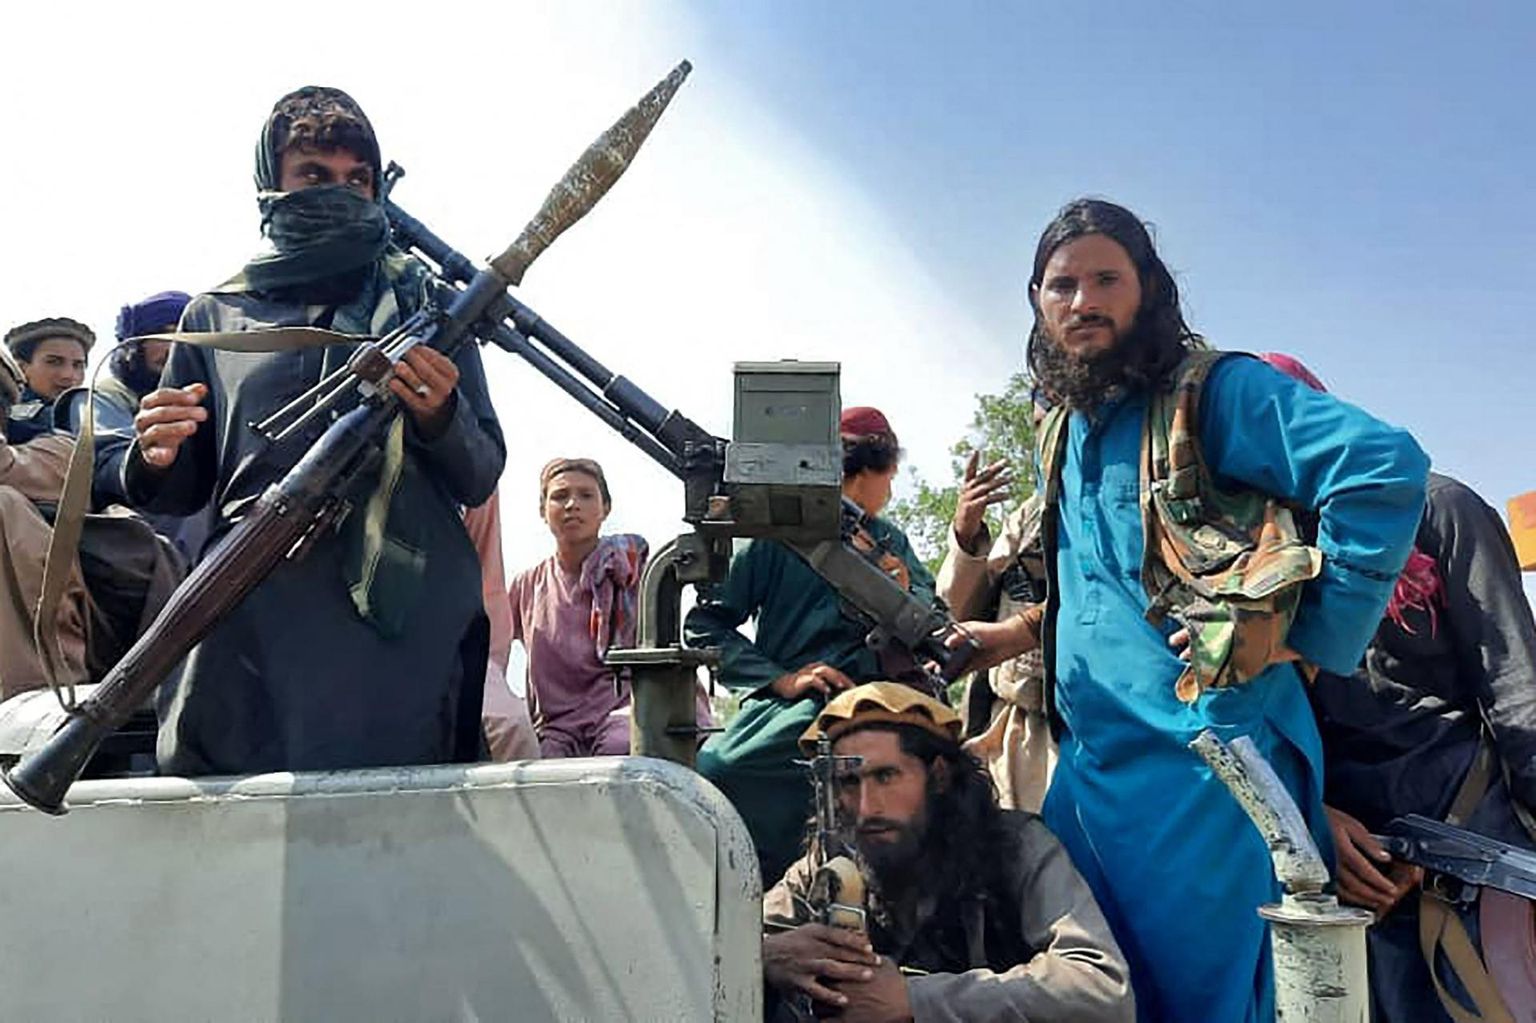 Talibani võitlejad eile Laghmani provintsis umbes poolel teel Kabuli ja Jalalabadi vahel. Islamiliikumise pealetung on olnud kiire ja tulnud paljudele üllatusena. 